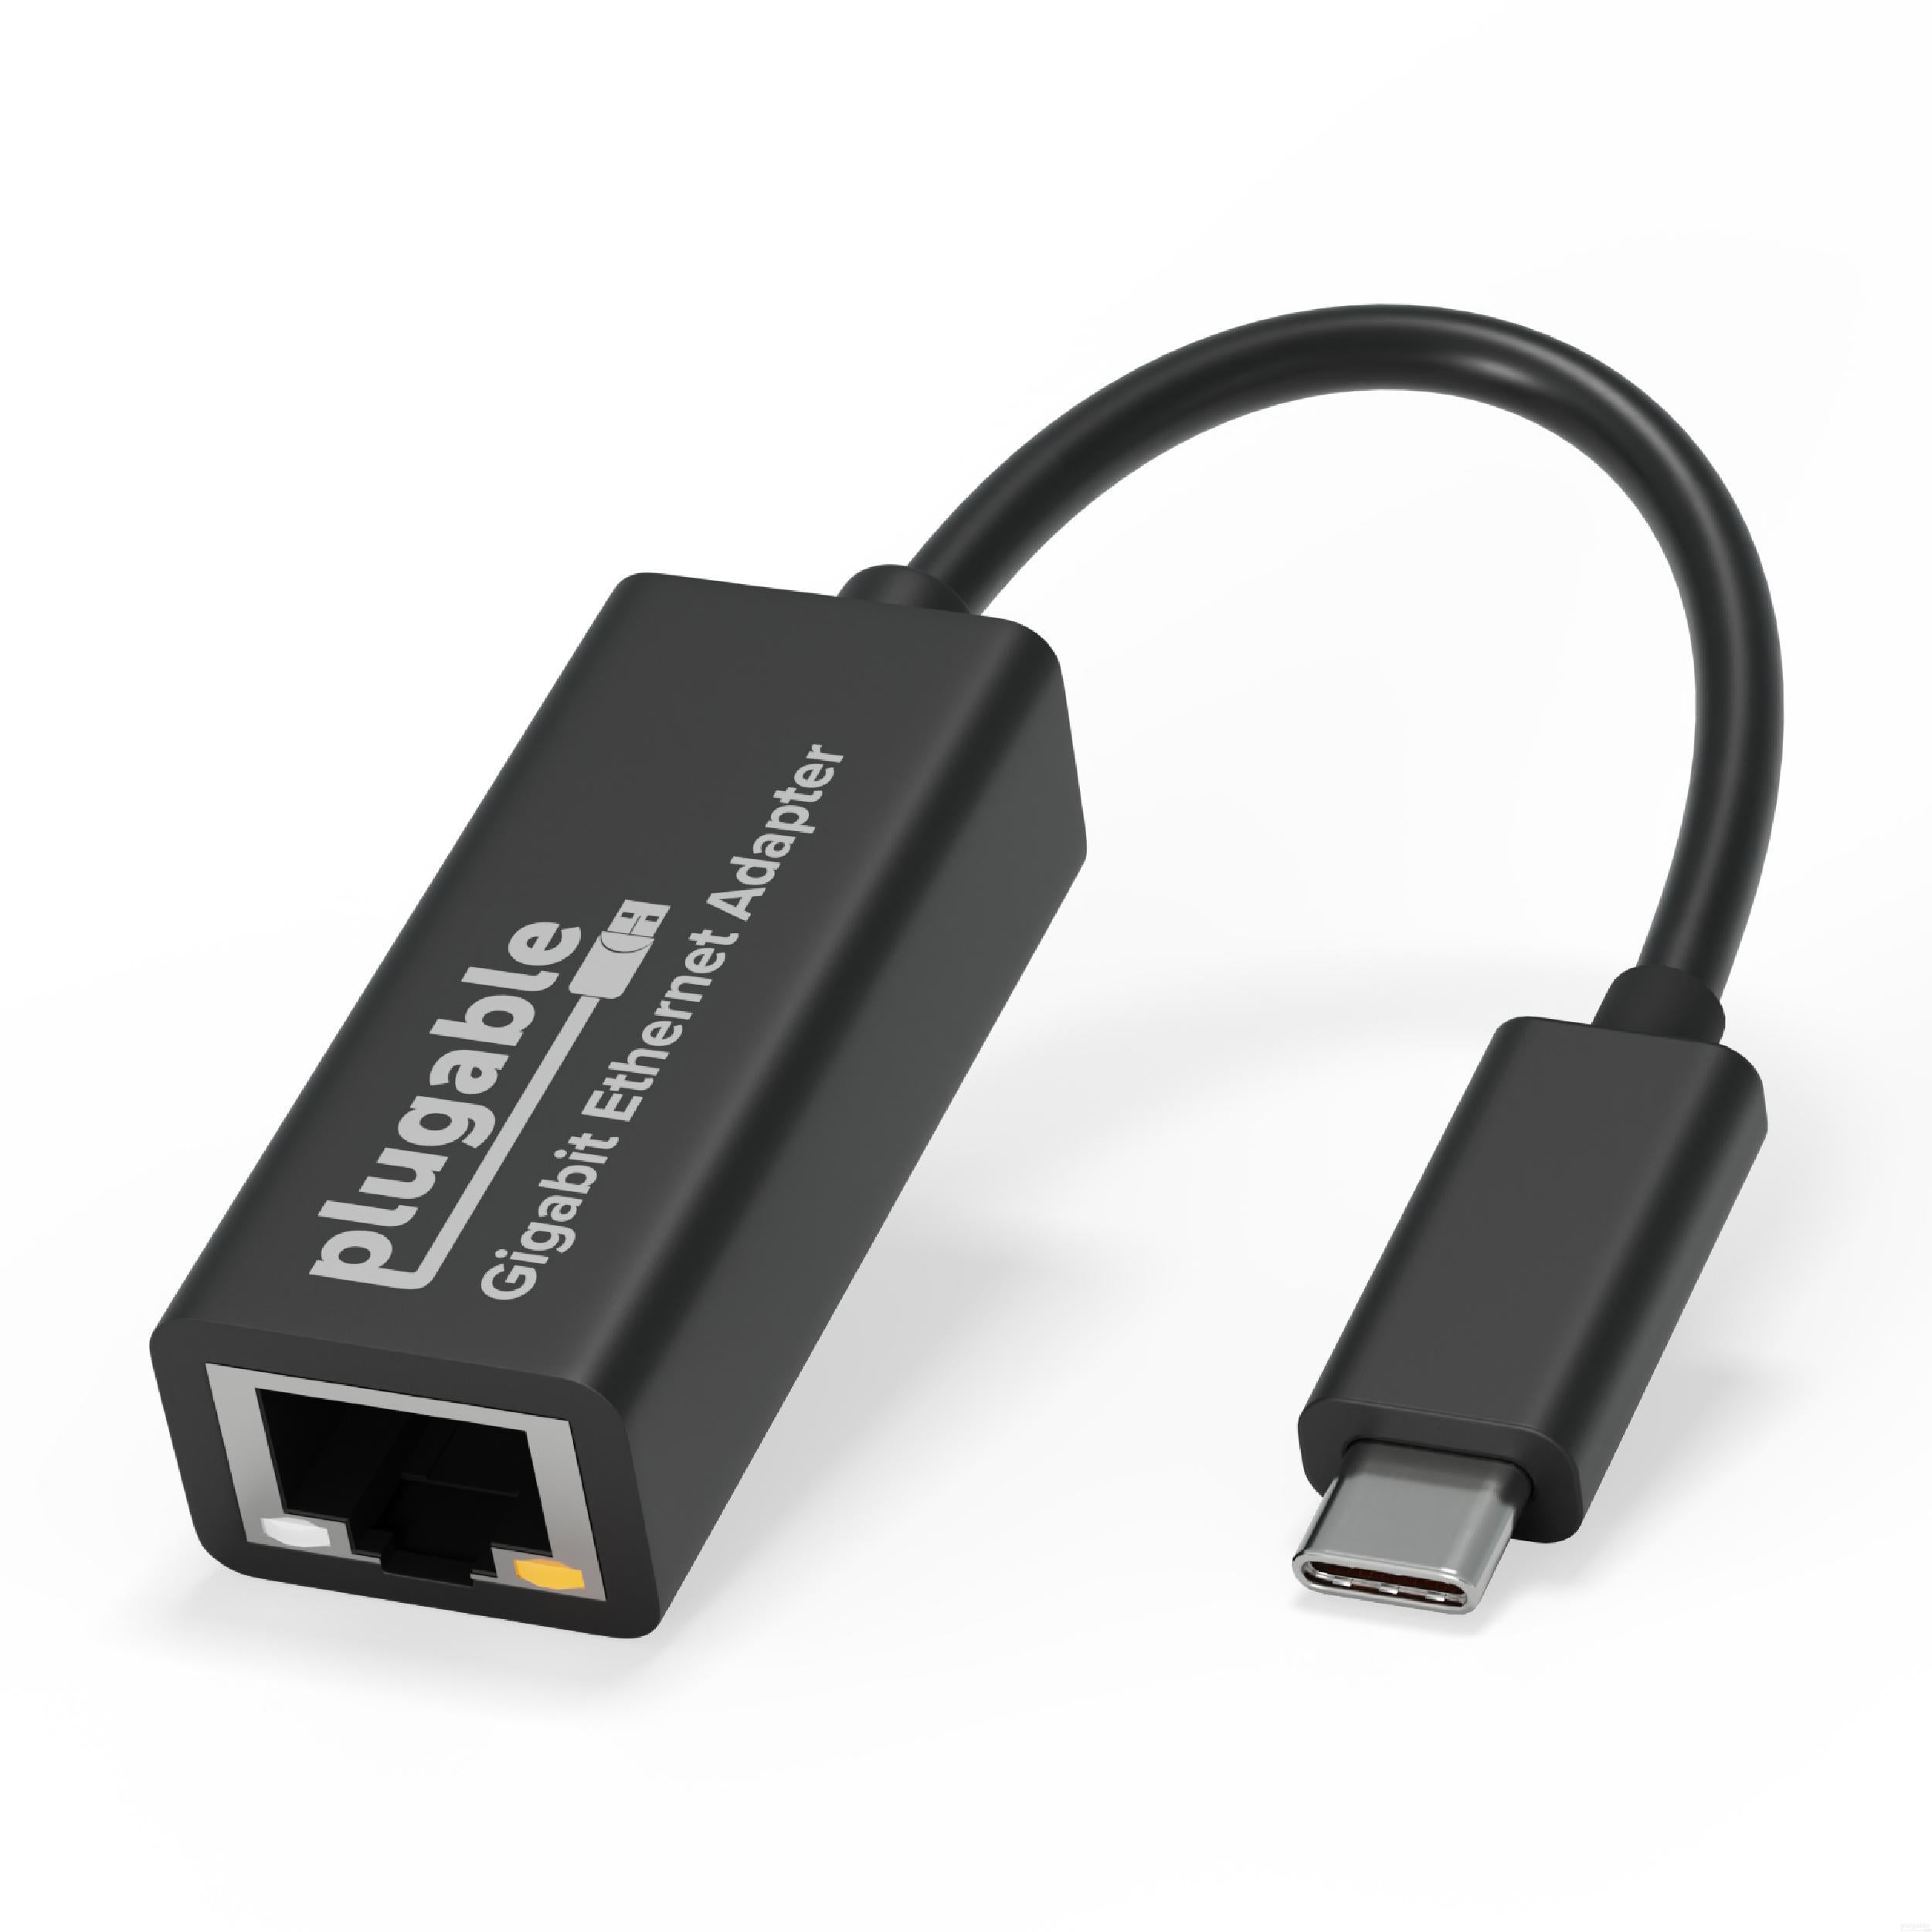 Plugable USB-C ギガビットイーサネット アダプタ